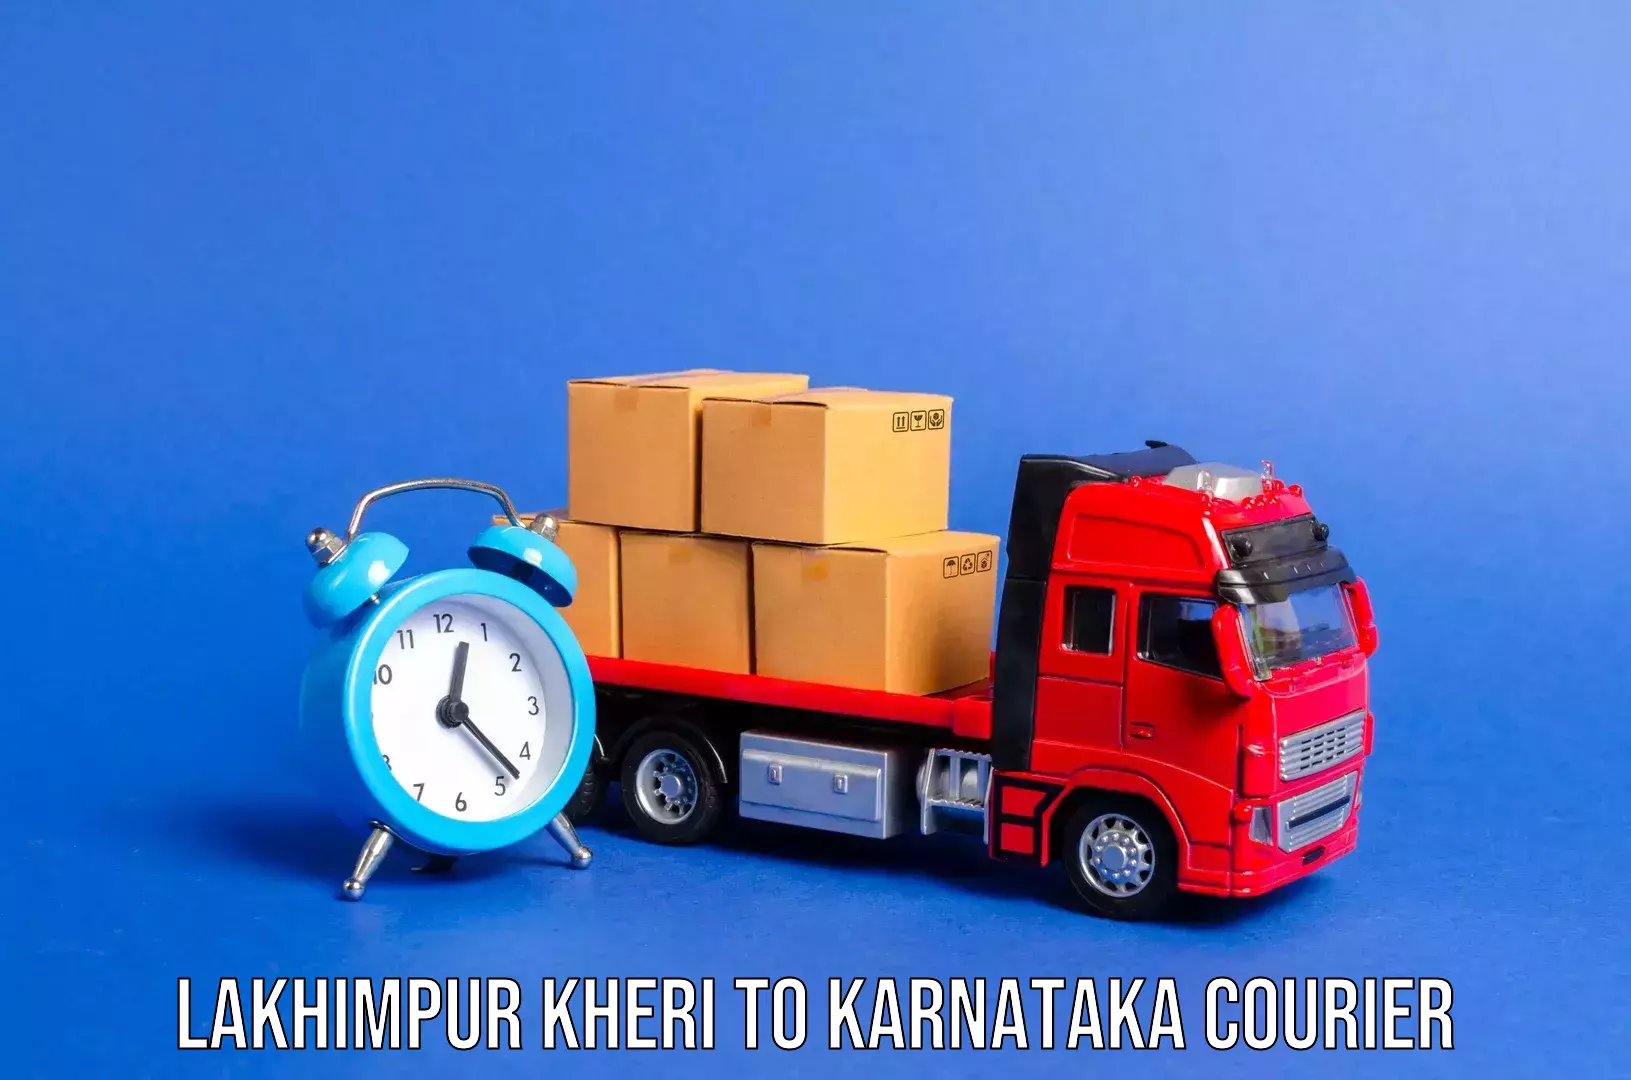 Baggage transport professionals Lakhimpur Kheri to Munavalli